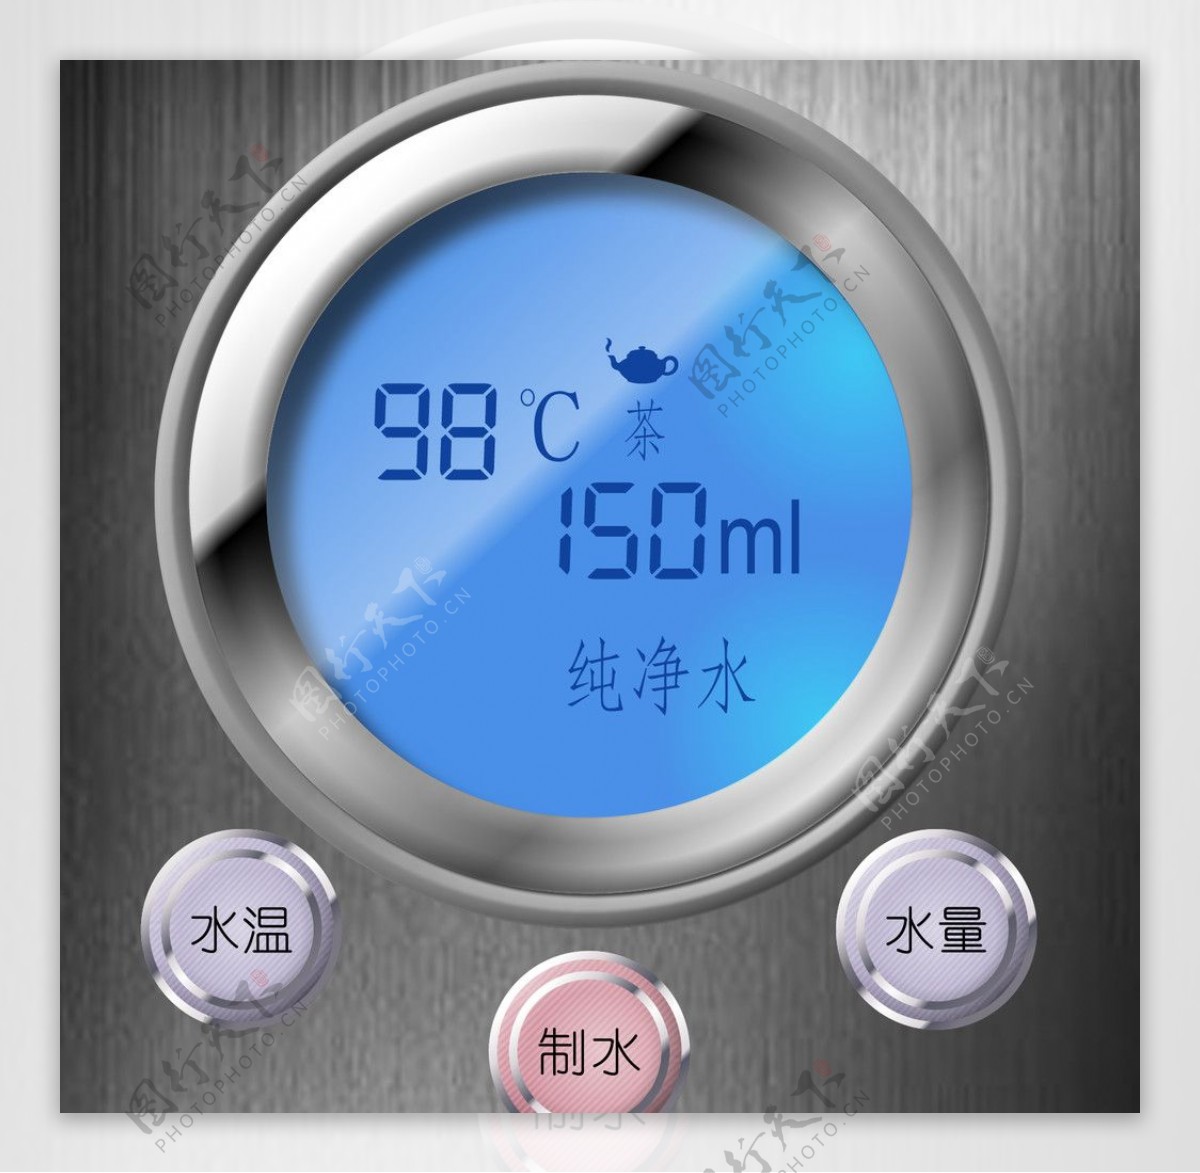 热水器控制器液晶屏图片